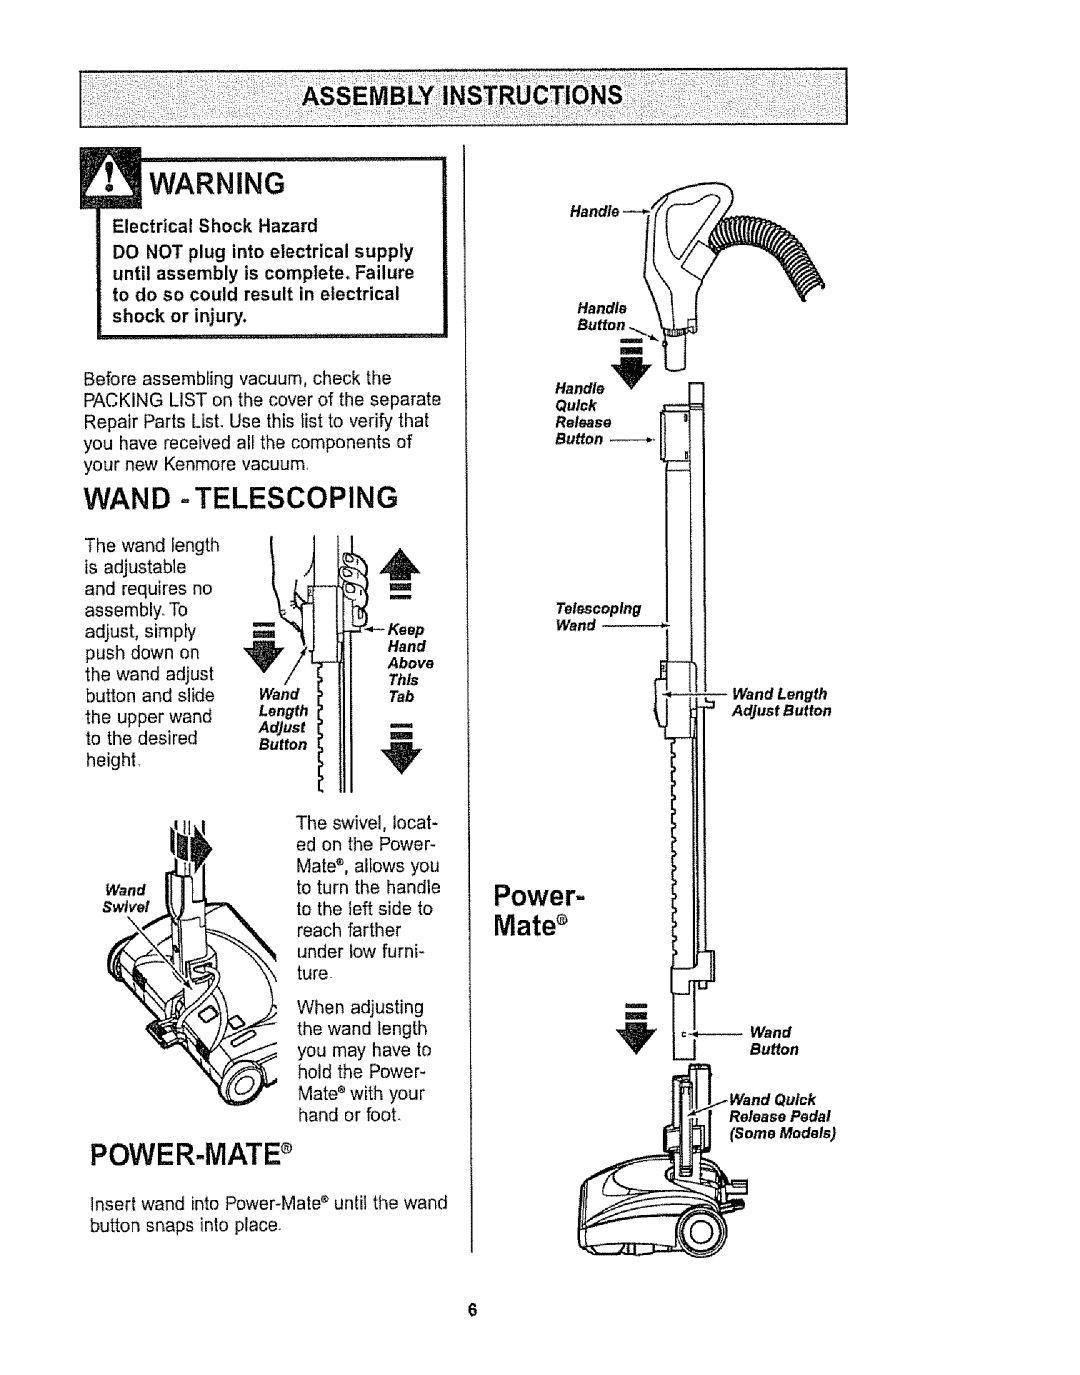 Kenmore 116.29912 POWER-MATEs, E Warning, Wand -Telescoping, Power, Mates, Electrical Shock Hazard, shock or injury 